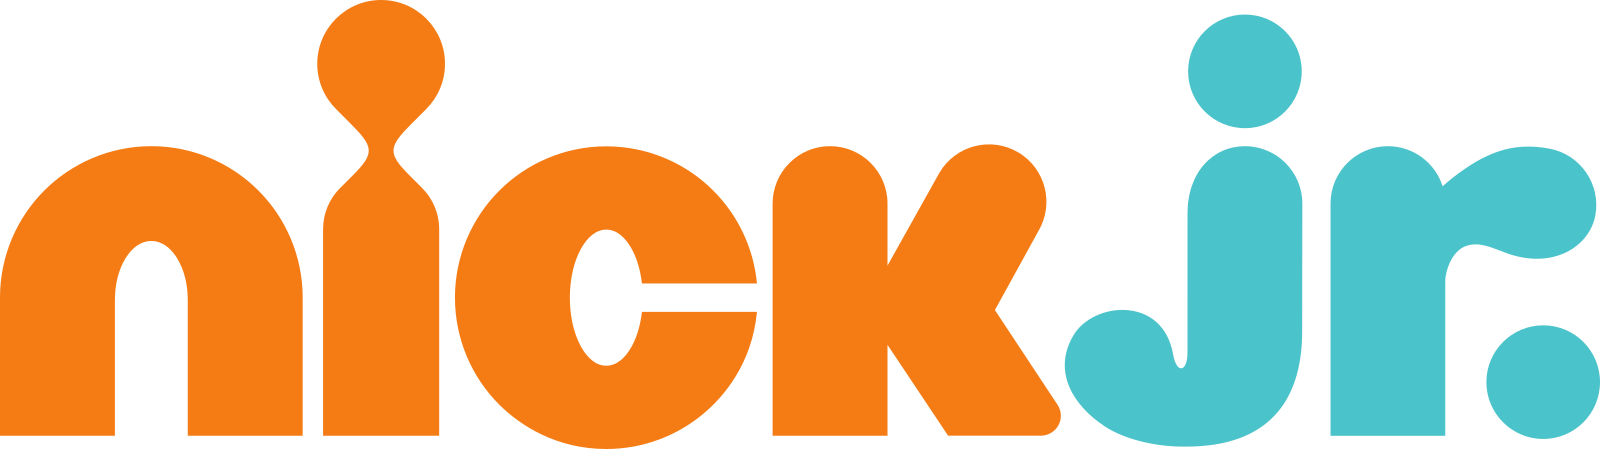 nick jr logo 2 - Nick Jr Logo